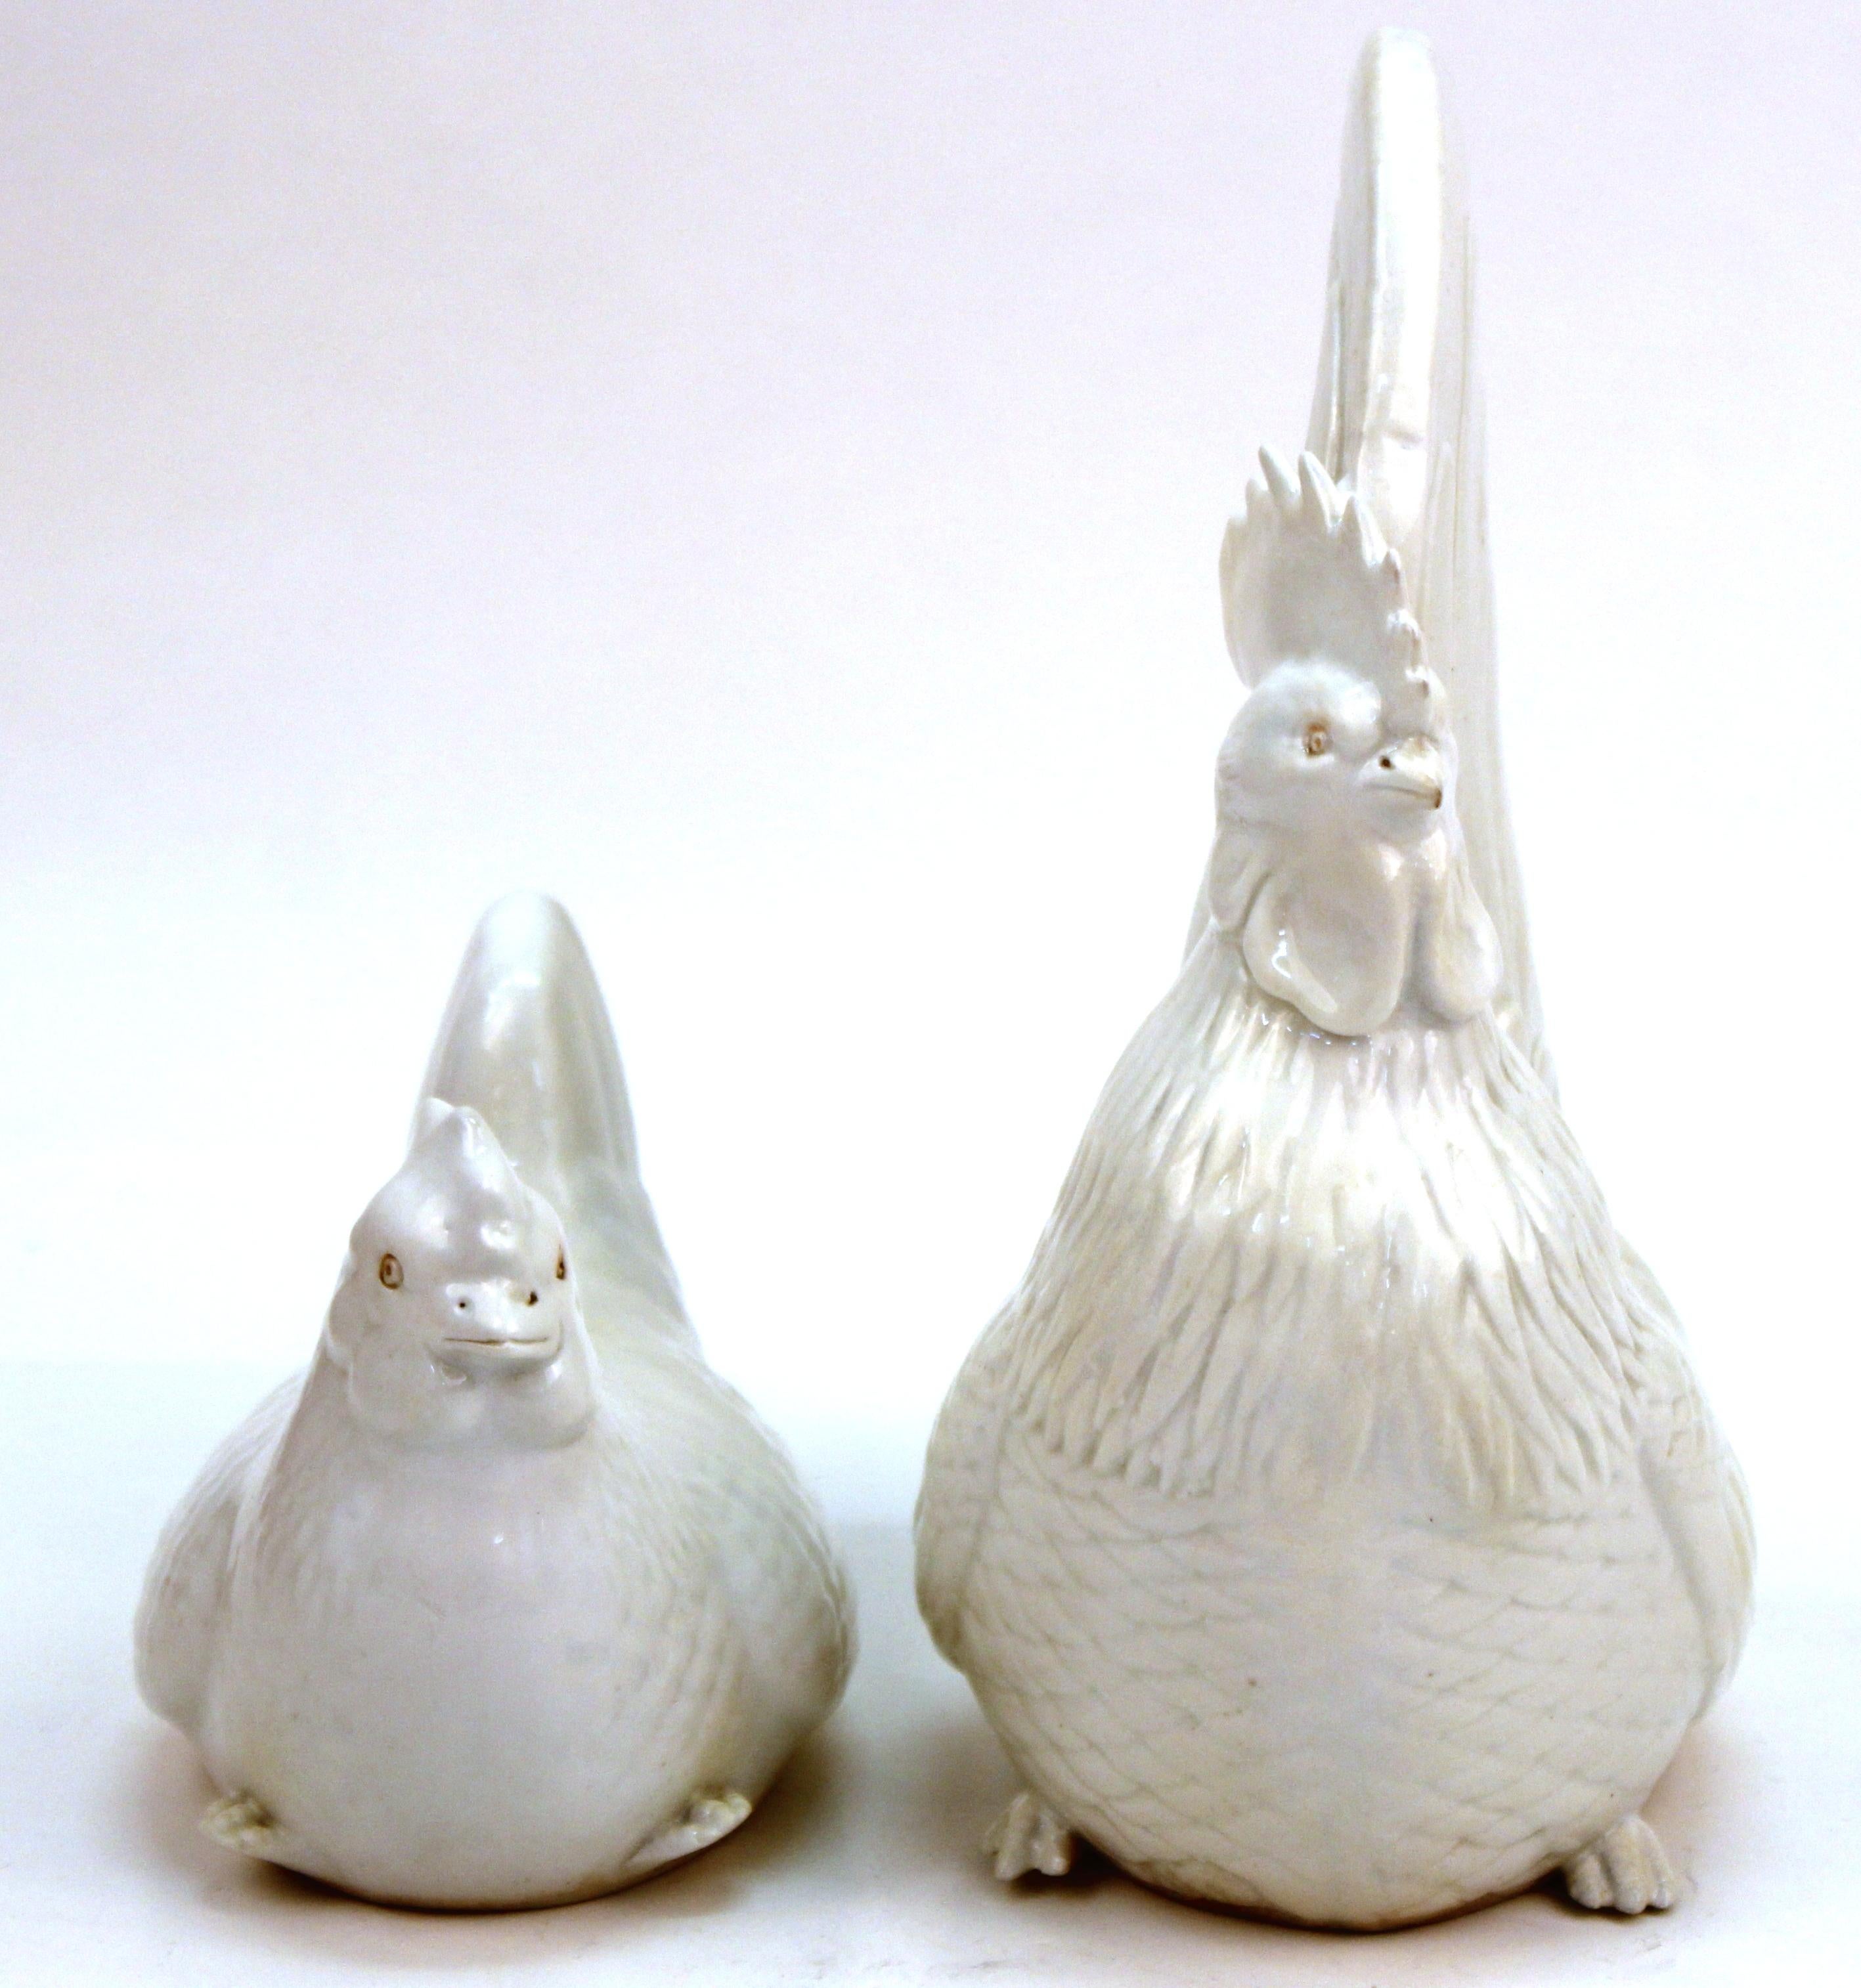 Paire de coqs et de poules d'époque Meiji, fabriqués par Hirado en porcelaine à glaçure blanche, avec des yeux en biscuit. La paire a été fabriquée au Japon vers 1890 et présente des détails réalistes. En excellent état antique avec une usure et une